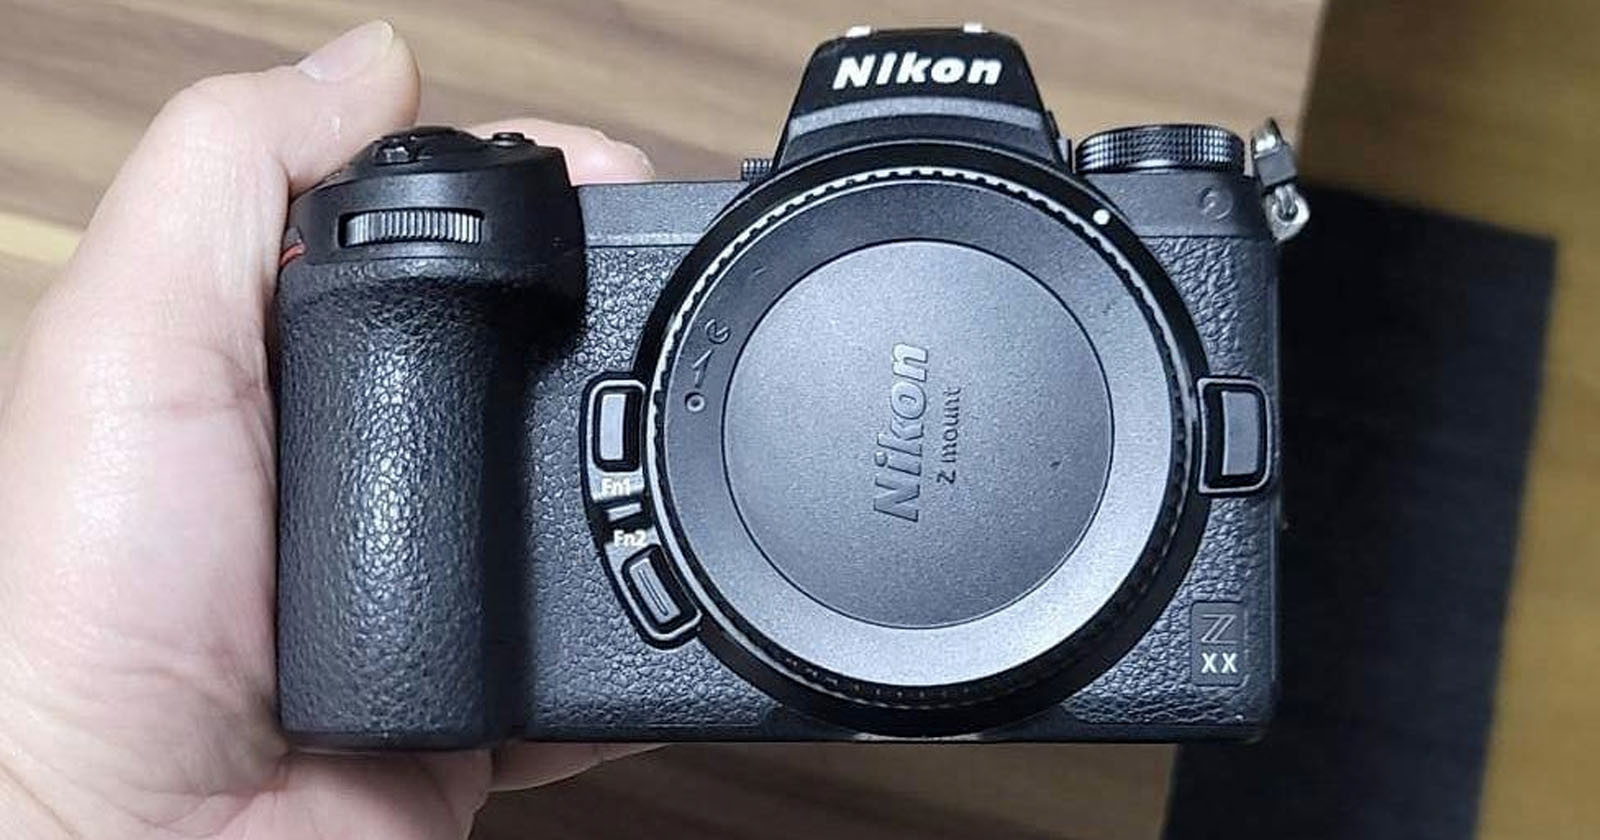 Photos of Strange Nikon Z XX Show What is Probably a Fake Camera